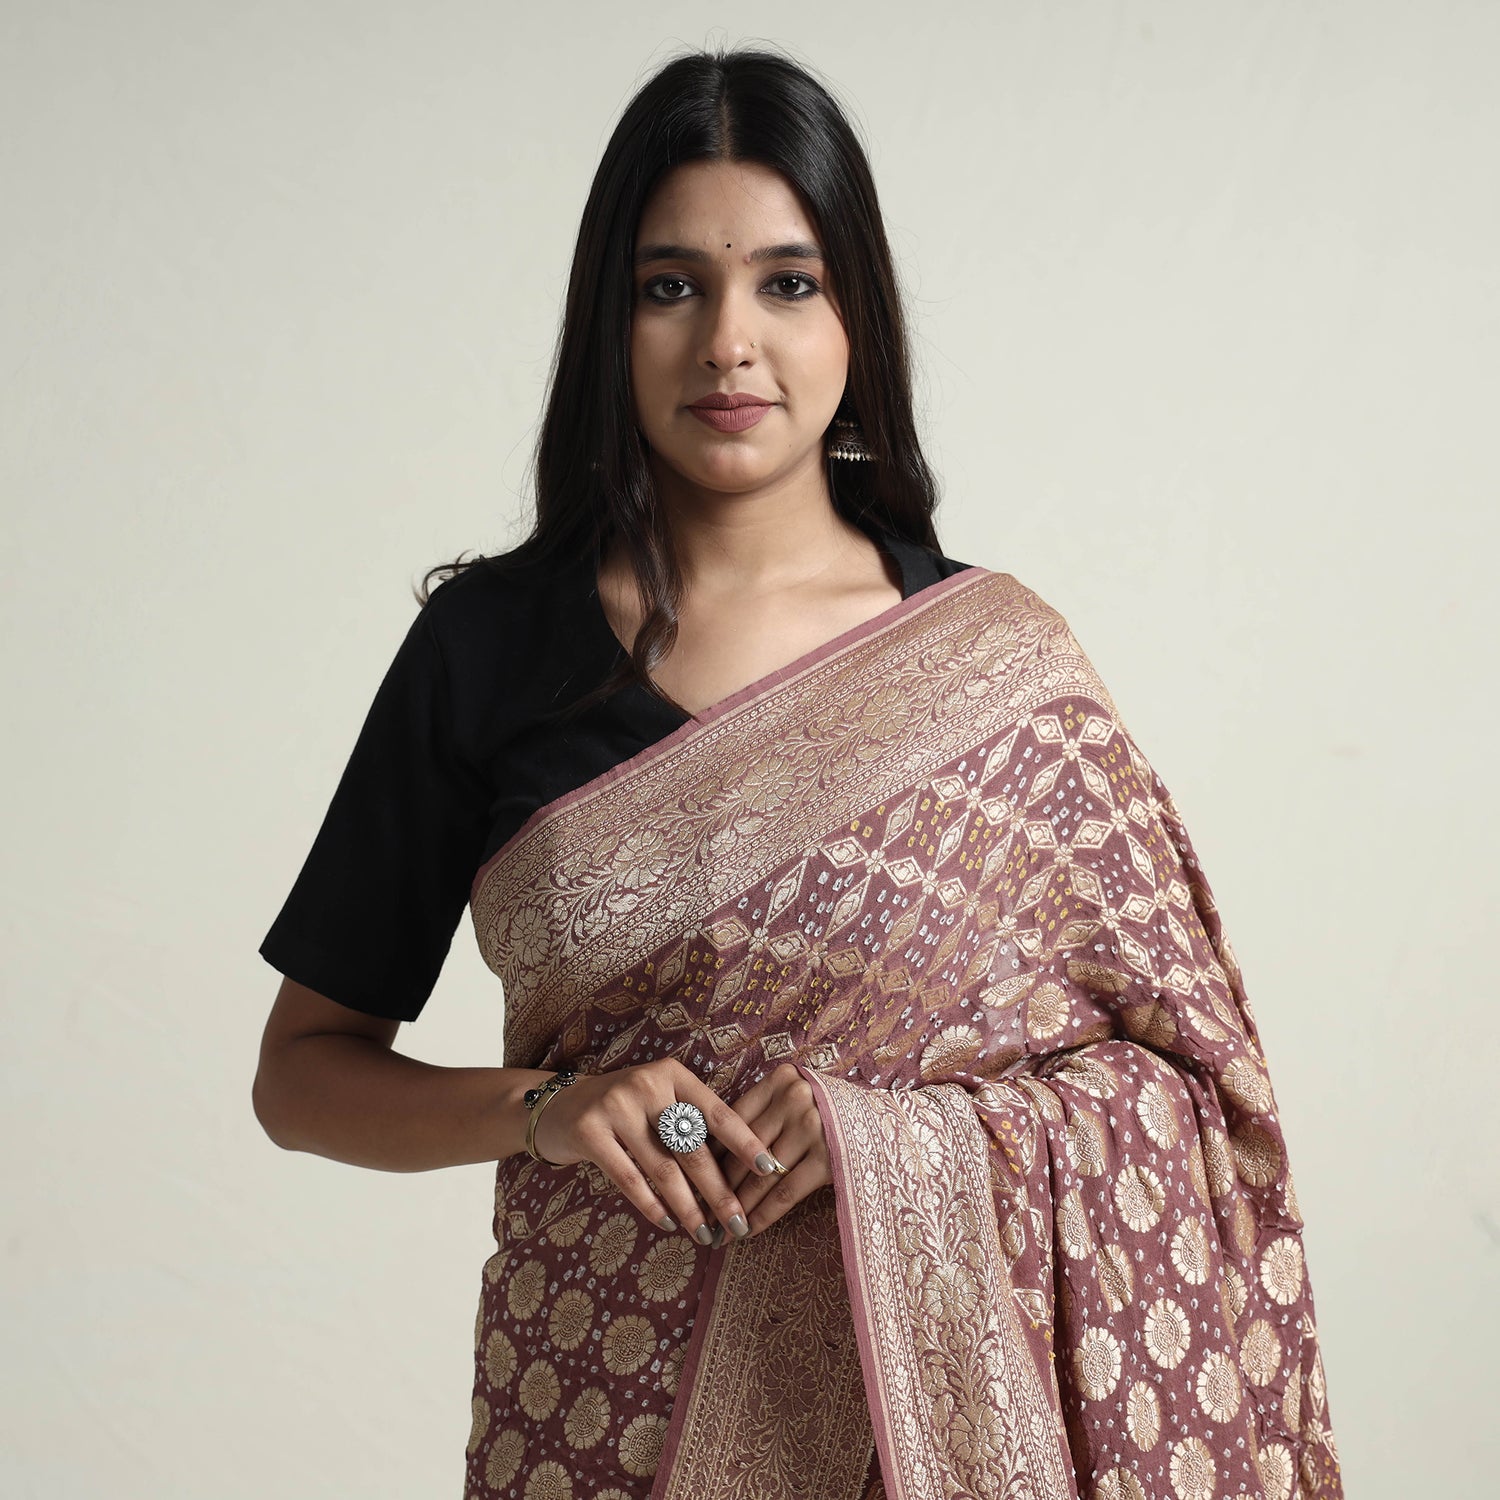 Kutch Bandhani Tie-Dye Pure Georgette Banarasi Neem Zari Jaal Saree